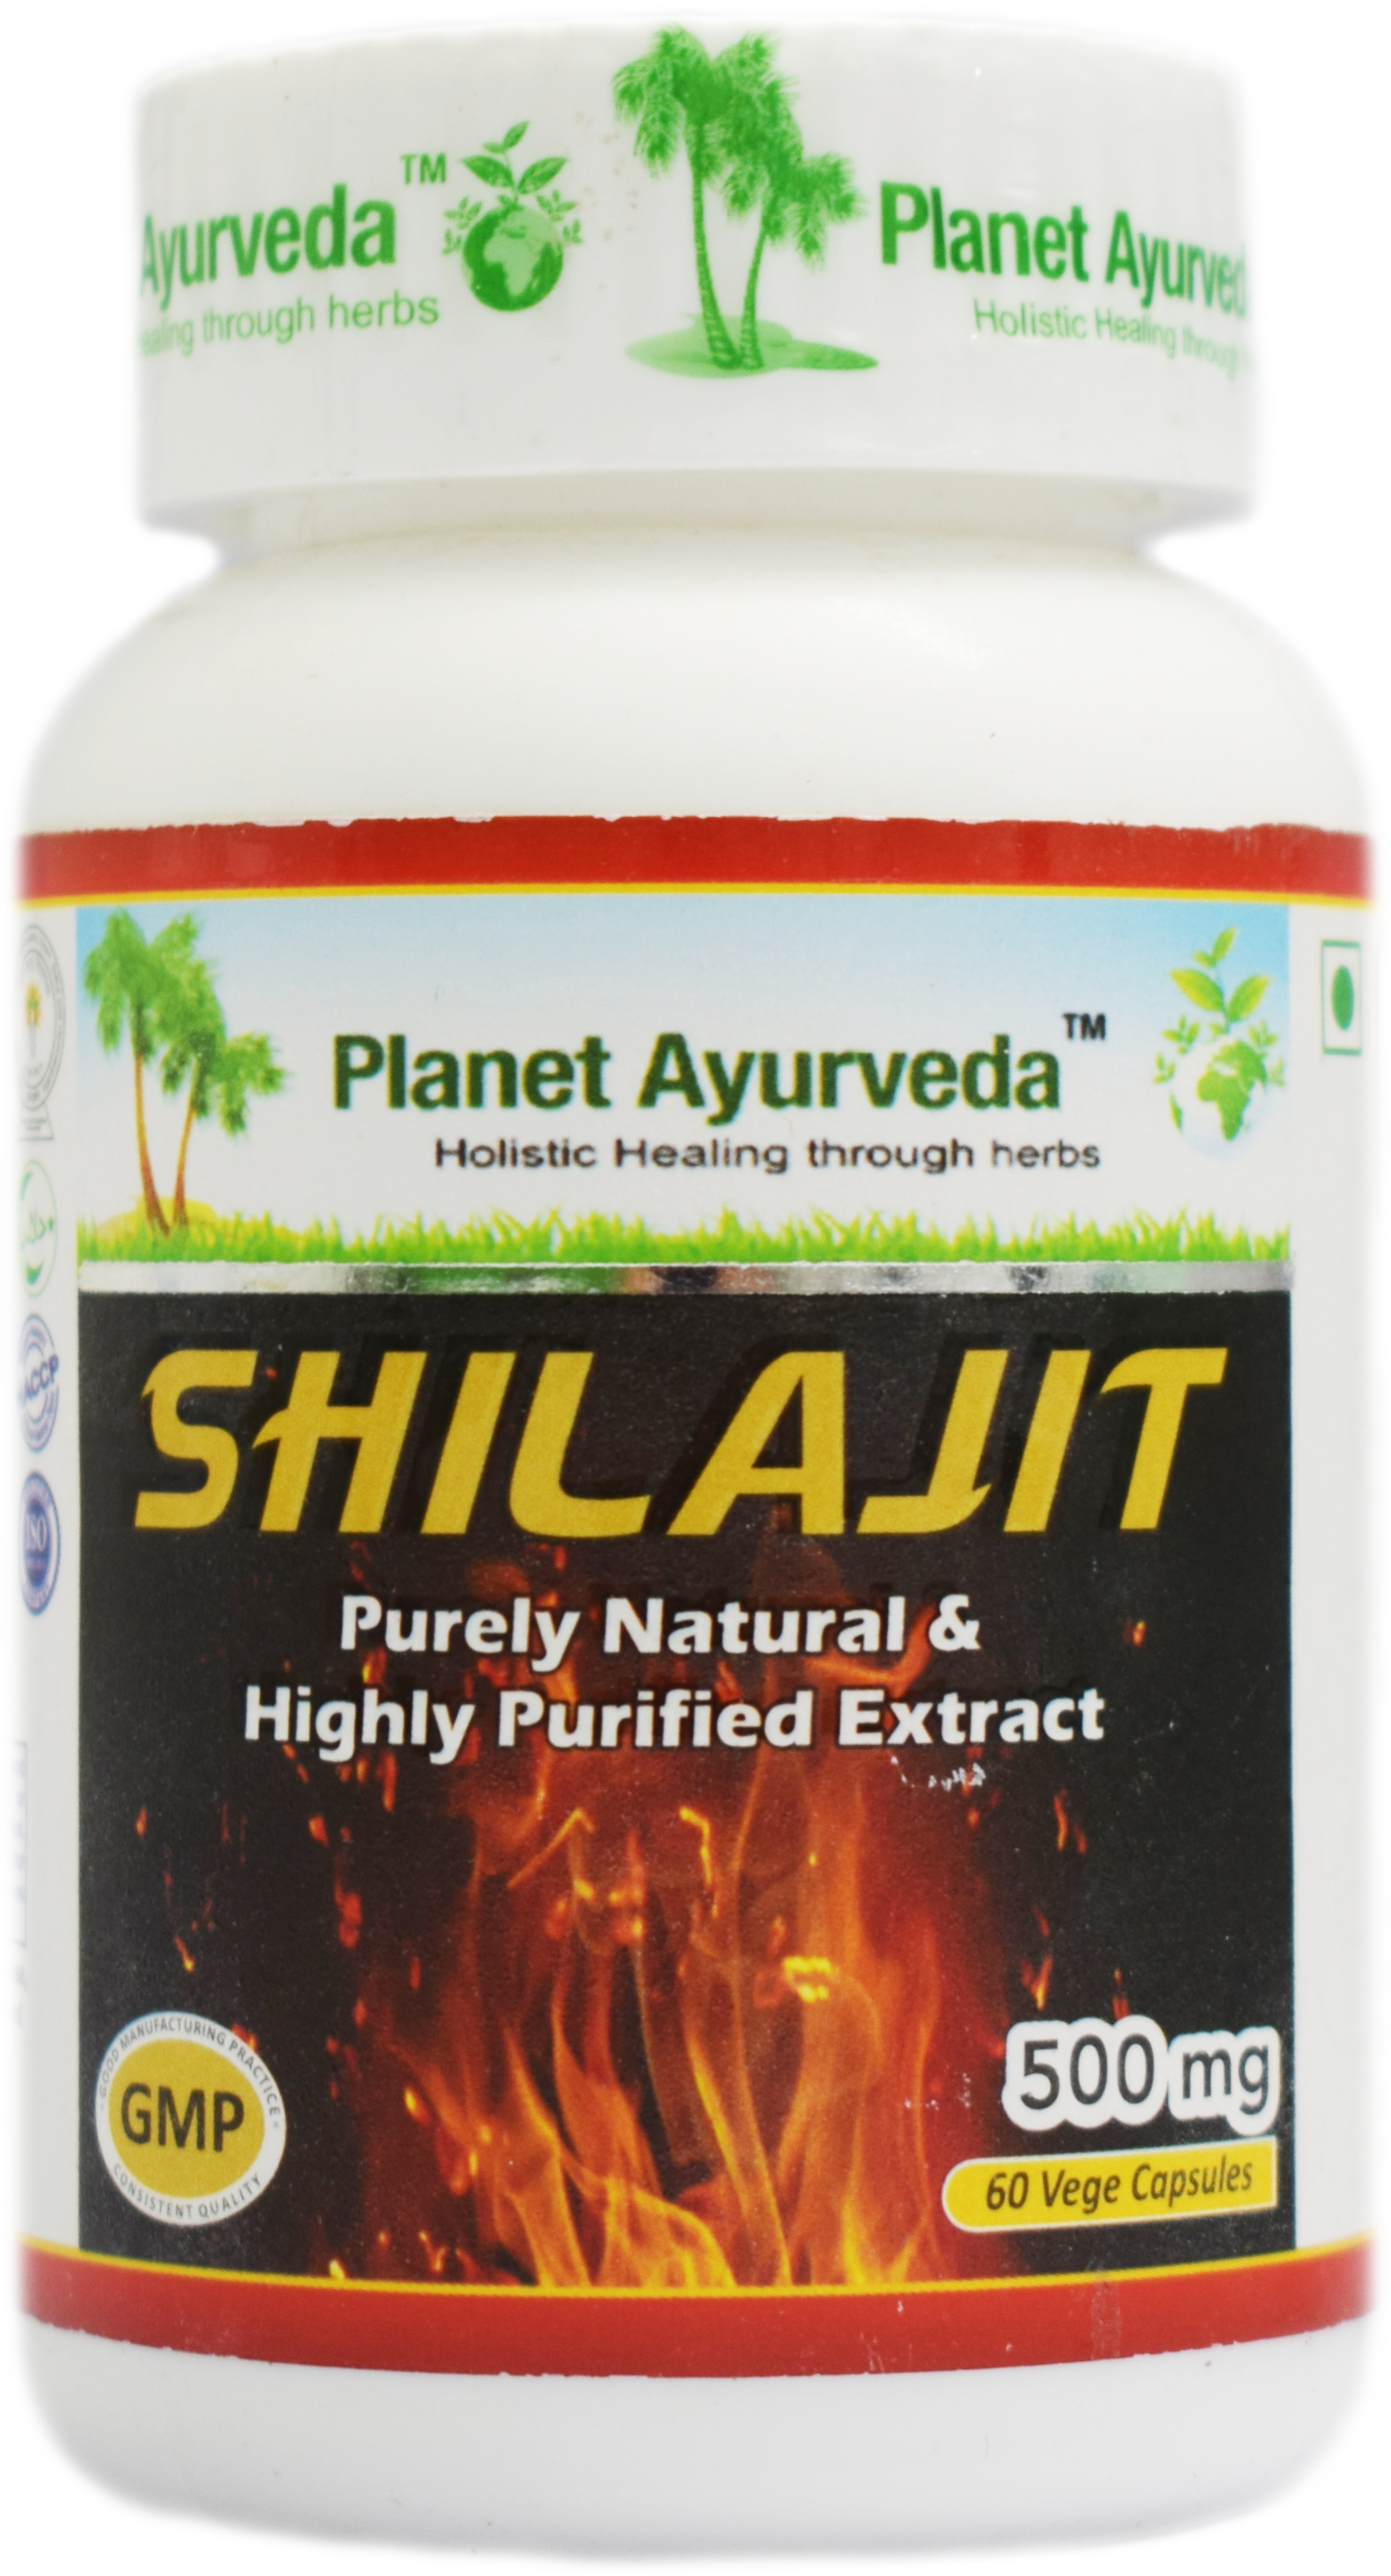 Buy Planet Ayurveda Shilajit Capsules at Best Price Online